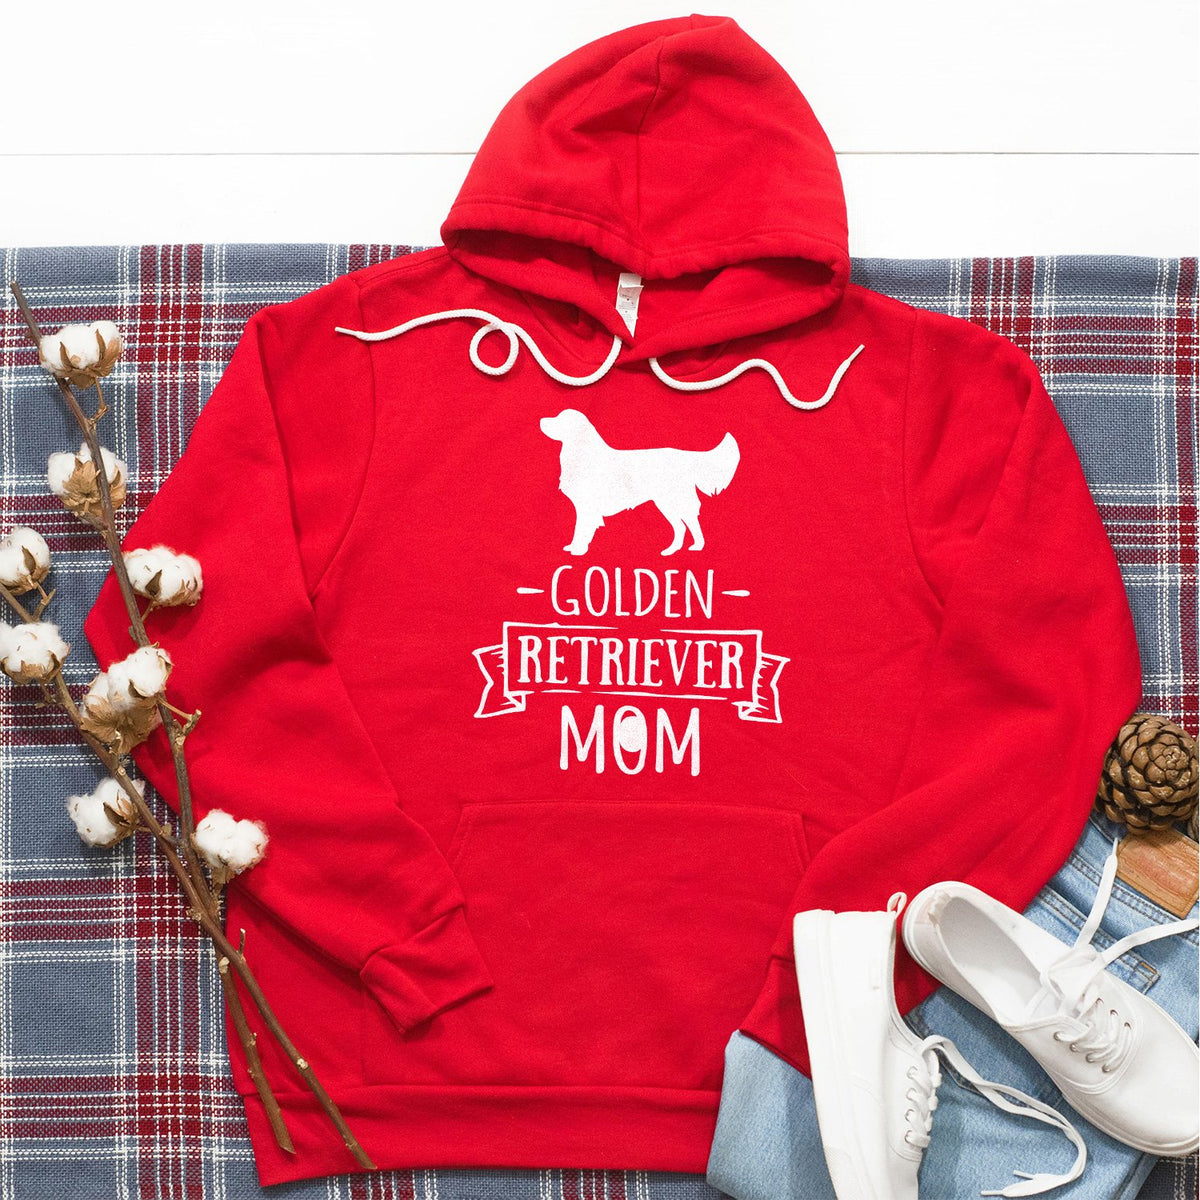 Golden Retriever Mom - Hoodie Sweatshirt